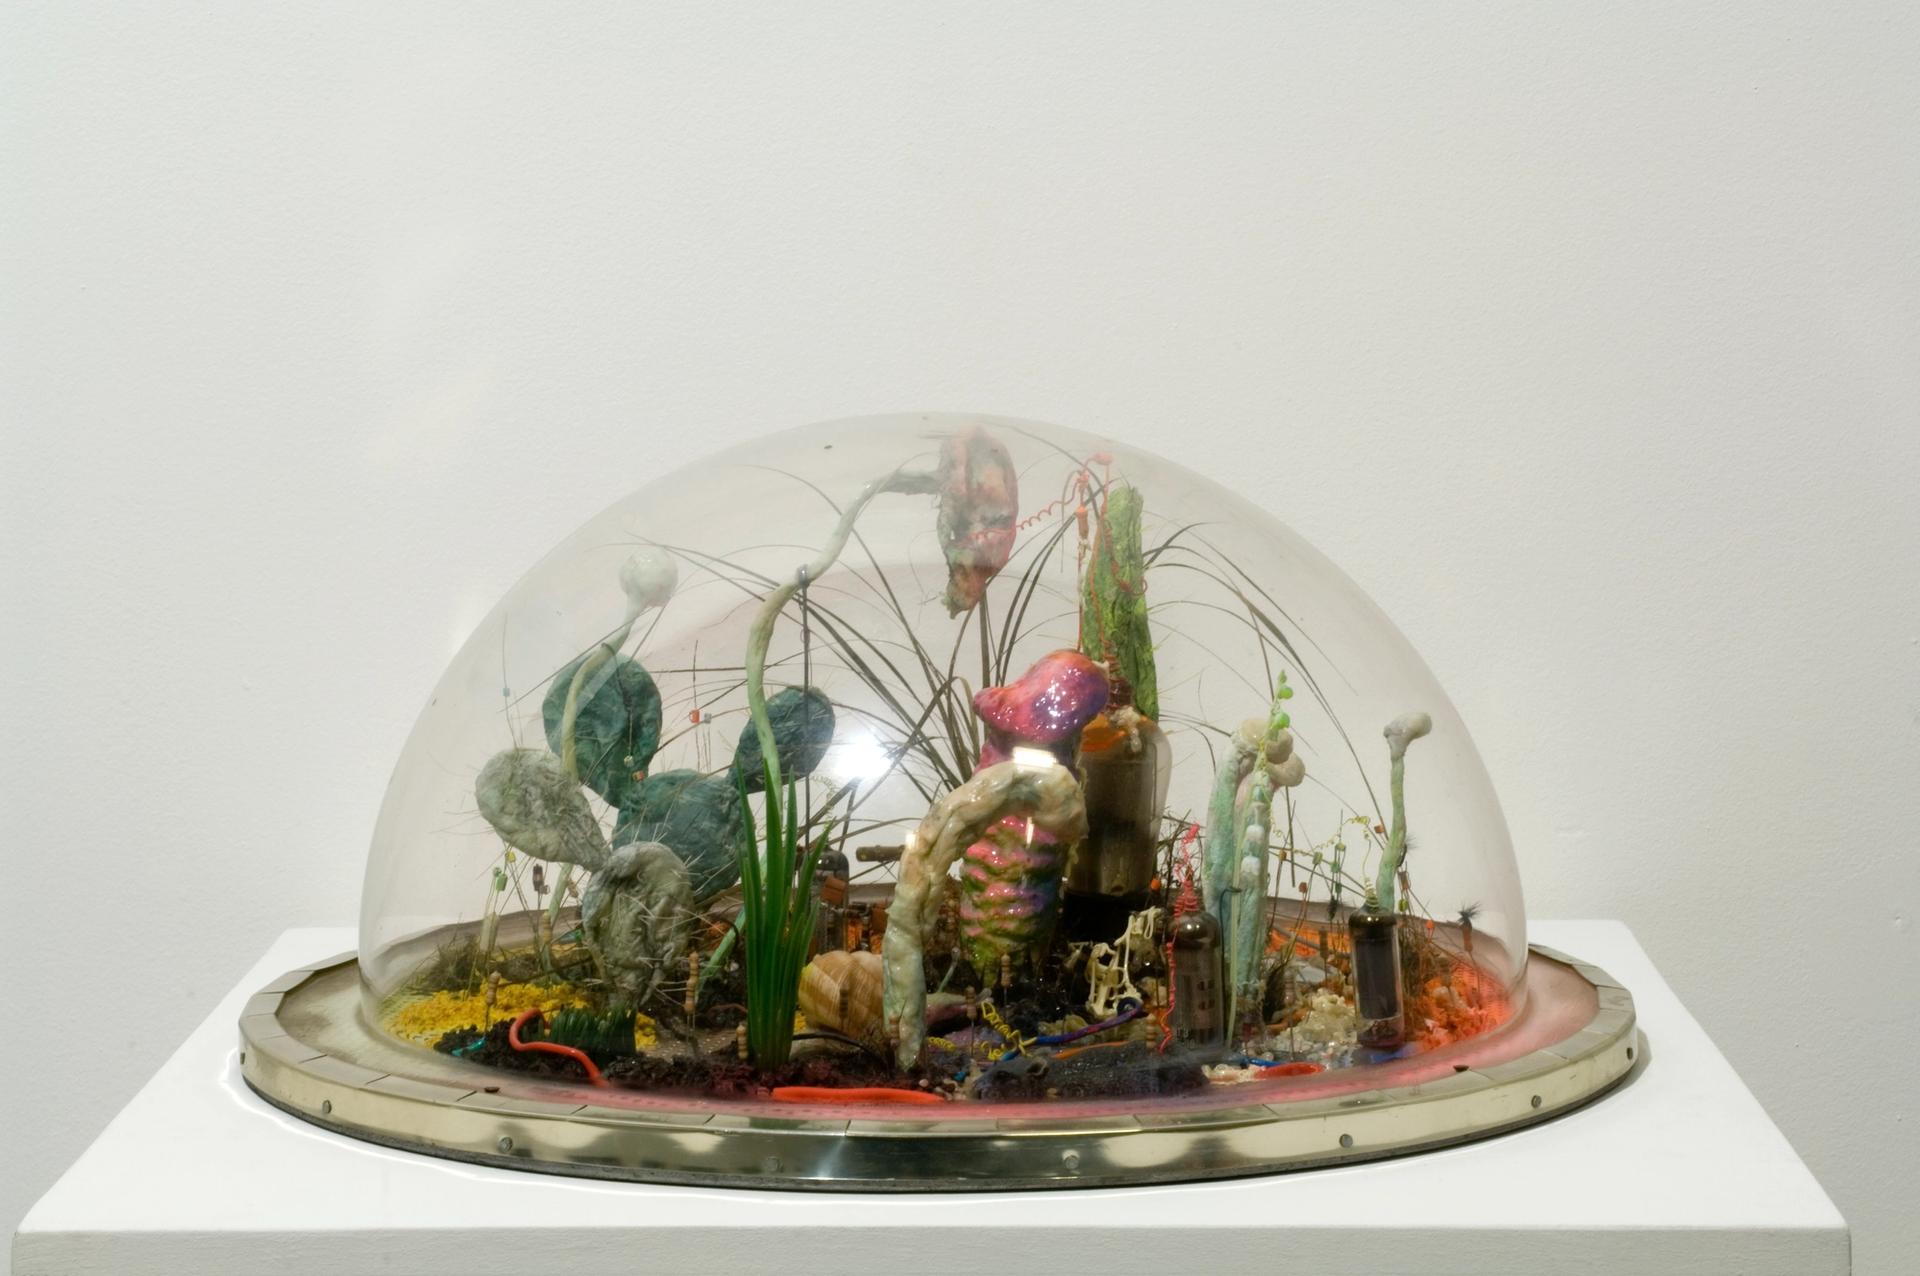 Tetsumi Kudo, Sans titre, 1971, plastique, résine et éléments électroniques sous cloche de plexiglas, 21 x 53 x 53 cm Crédit photographique : Cloé Beaugrand. © ADAGP, Paris, 2019